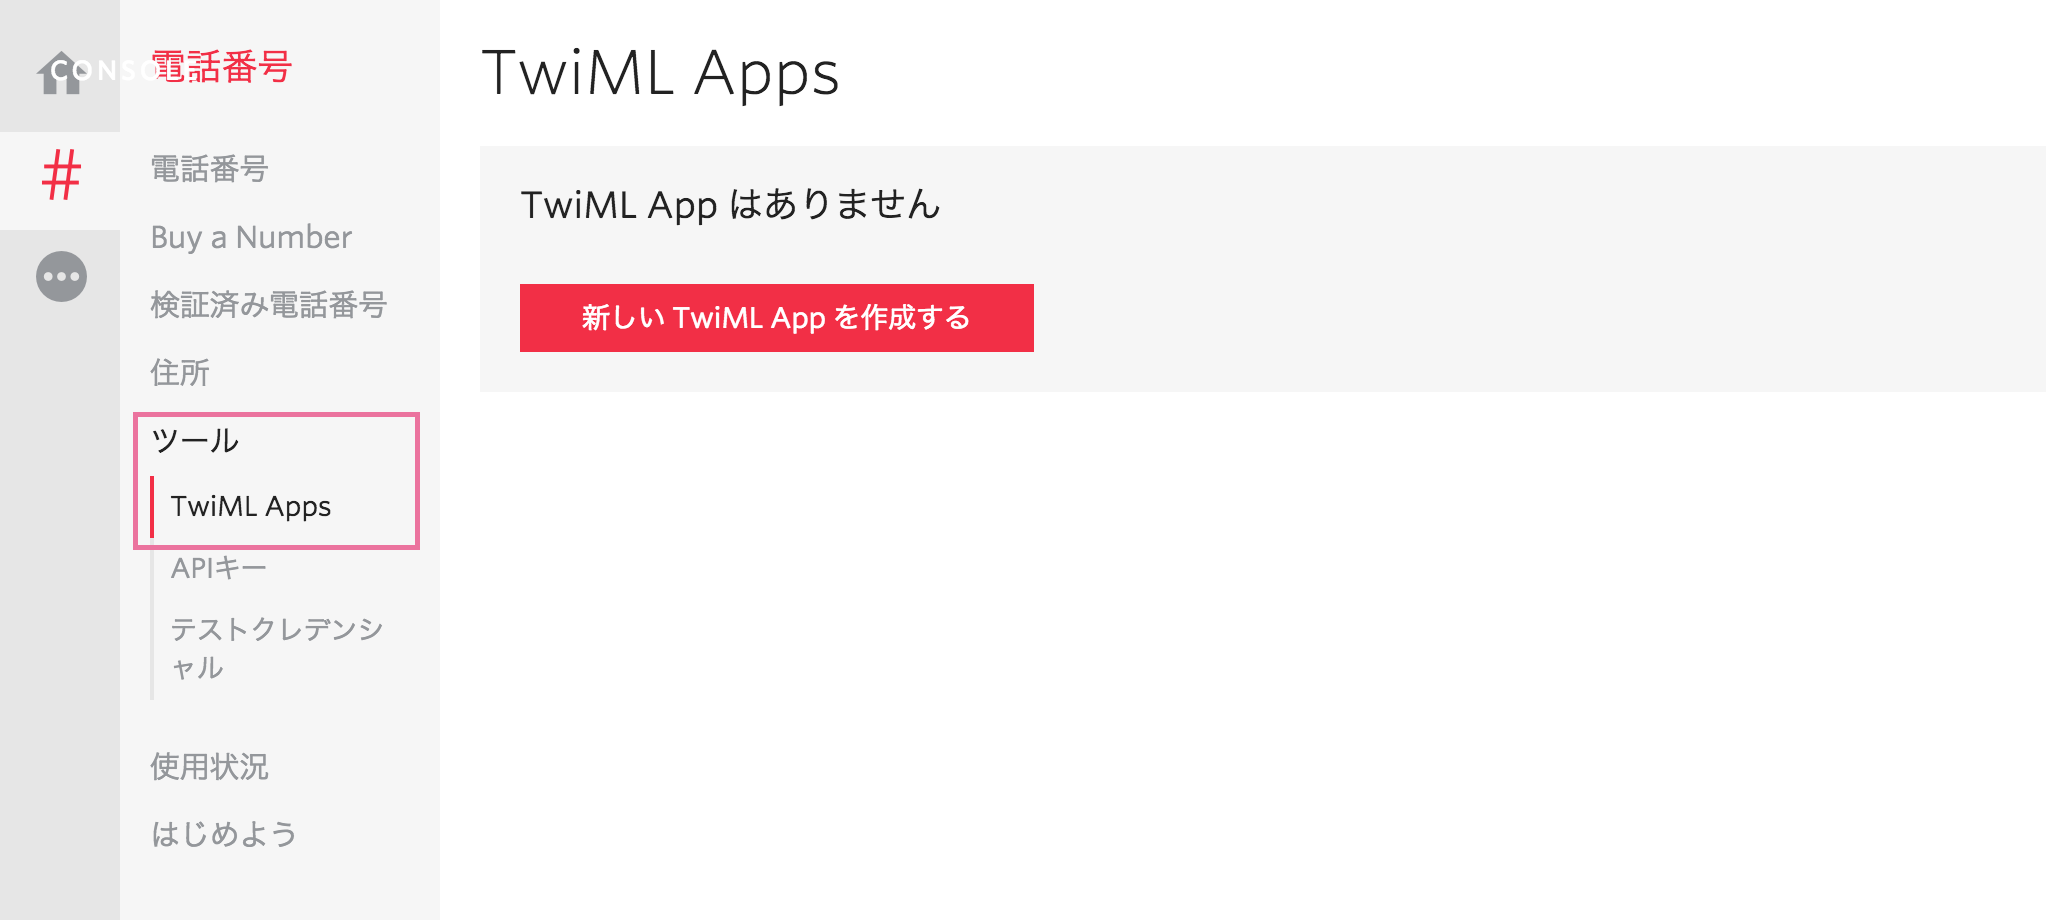 TwiML Apps